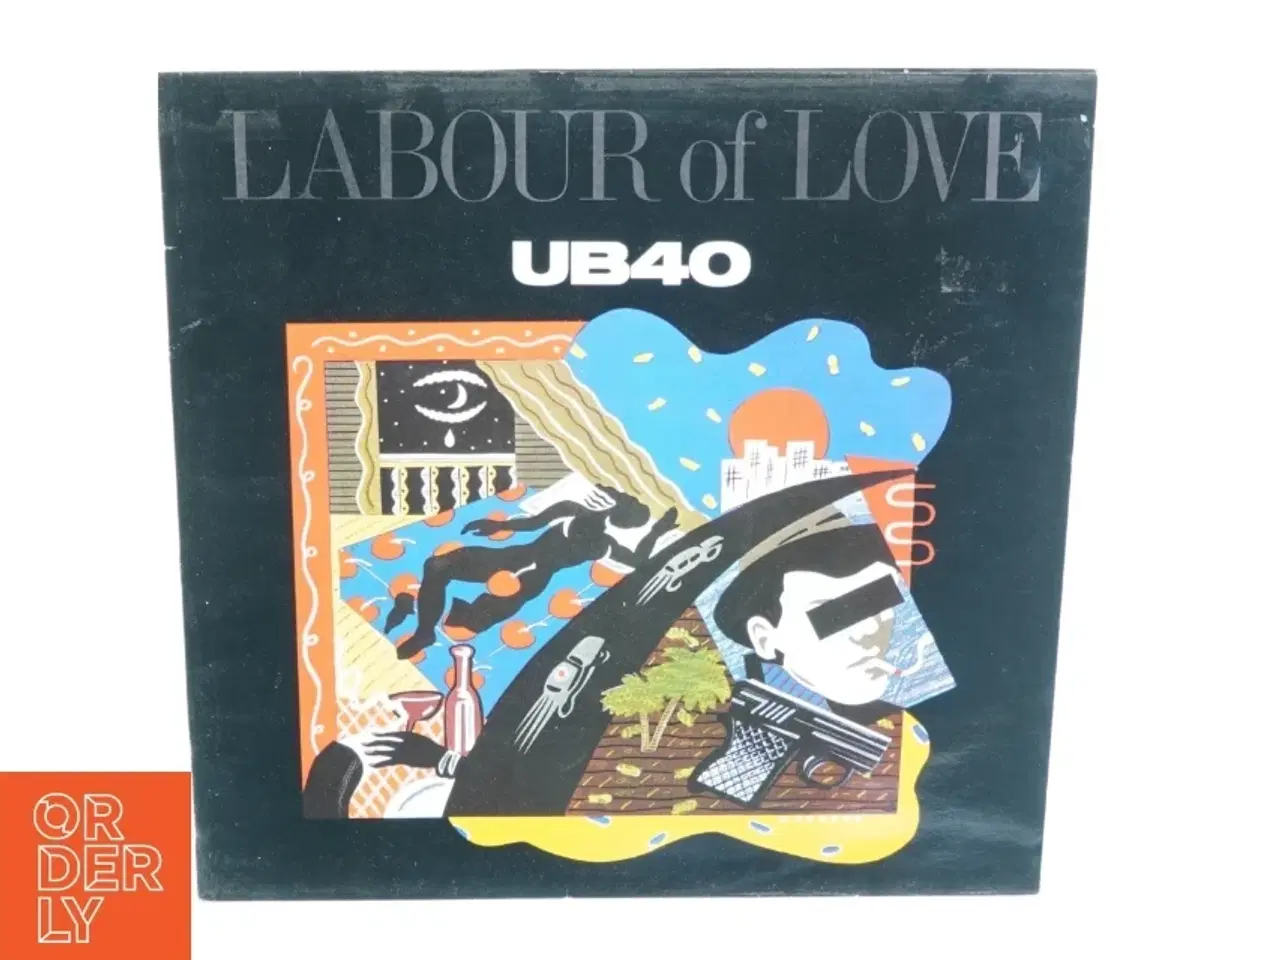 Billede 1 - "Labour of love" af UB40 LP